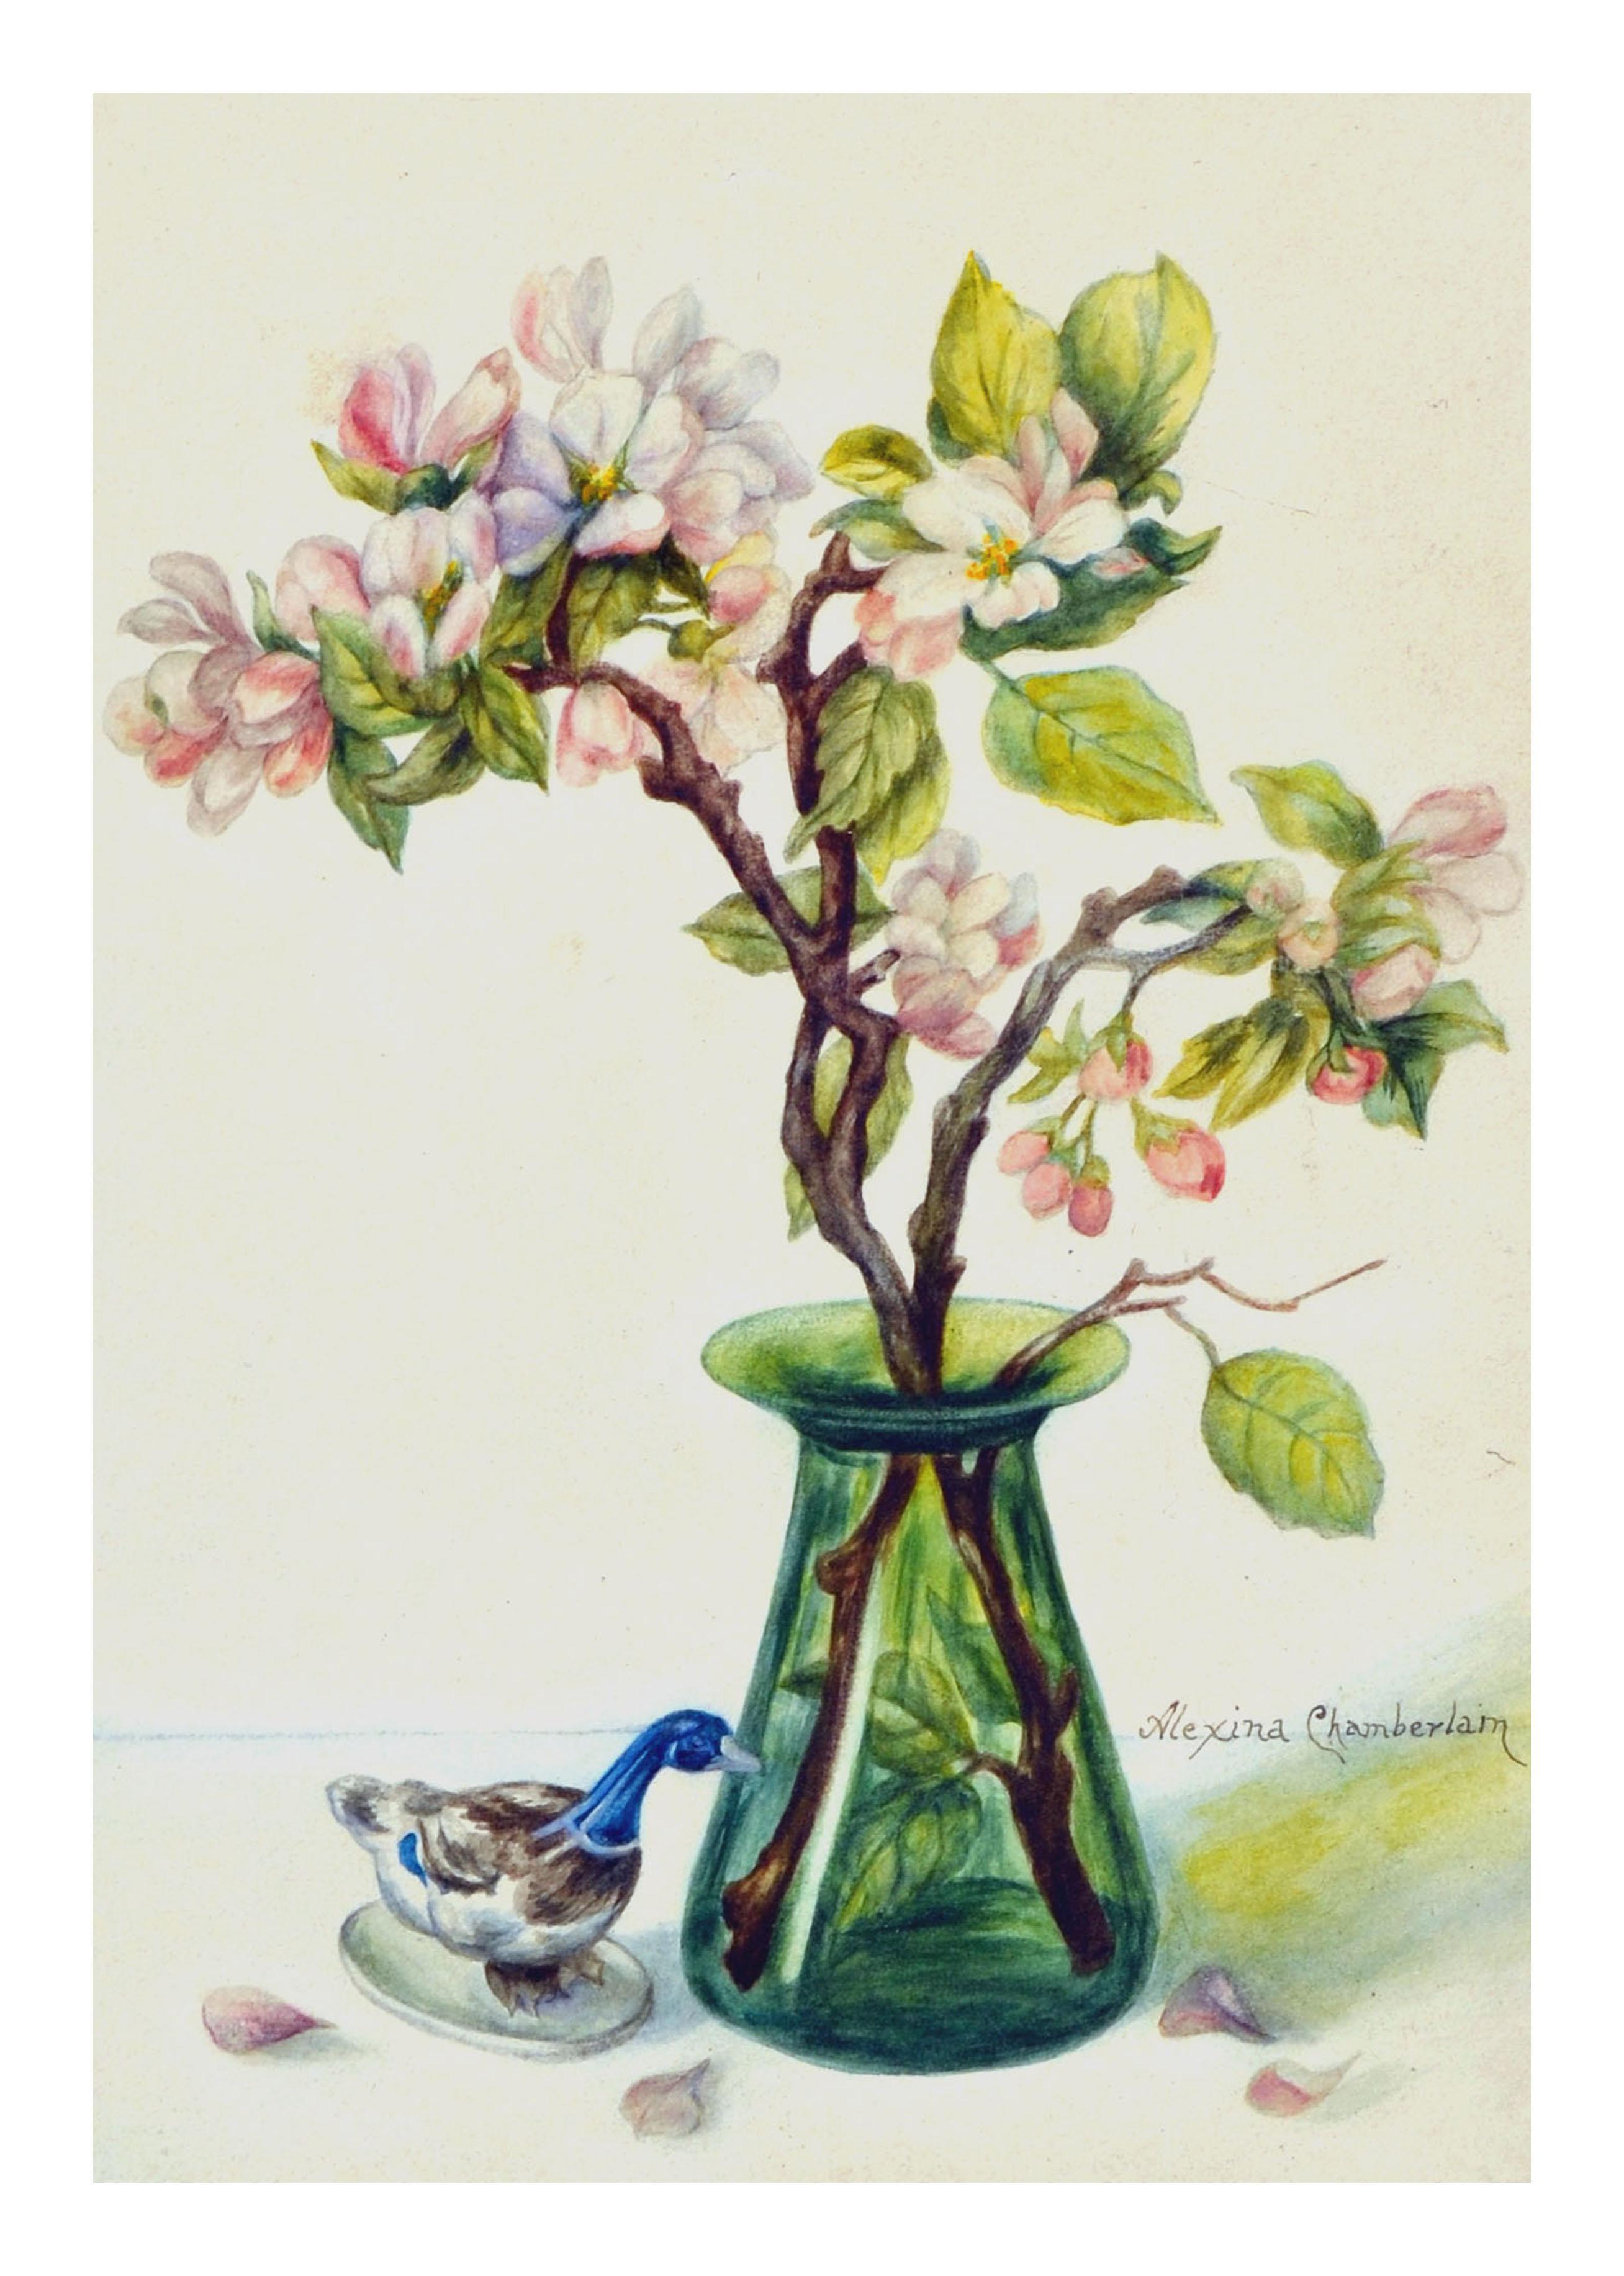 Blumen-Stillleben mit Magnolien und Gänseblümchen  (Amerikanischer Impressionismus), Art, von Alexina Chamberlain